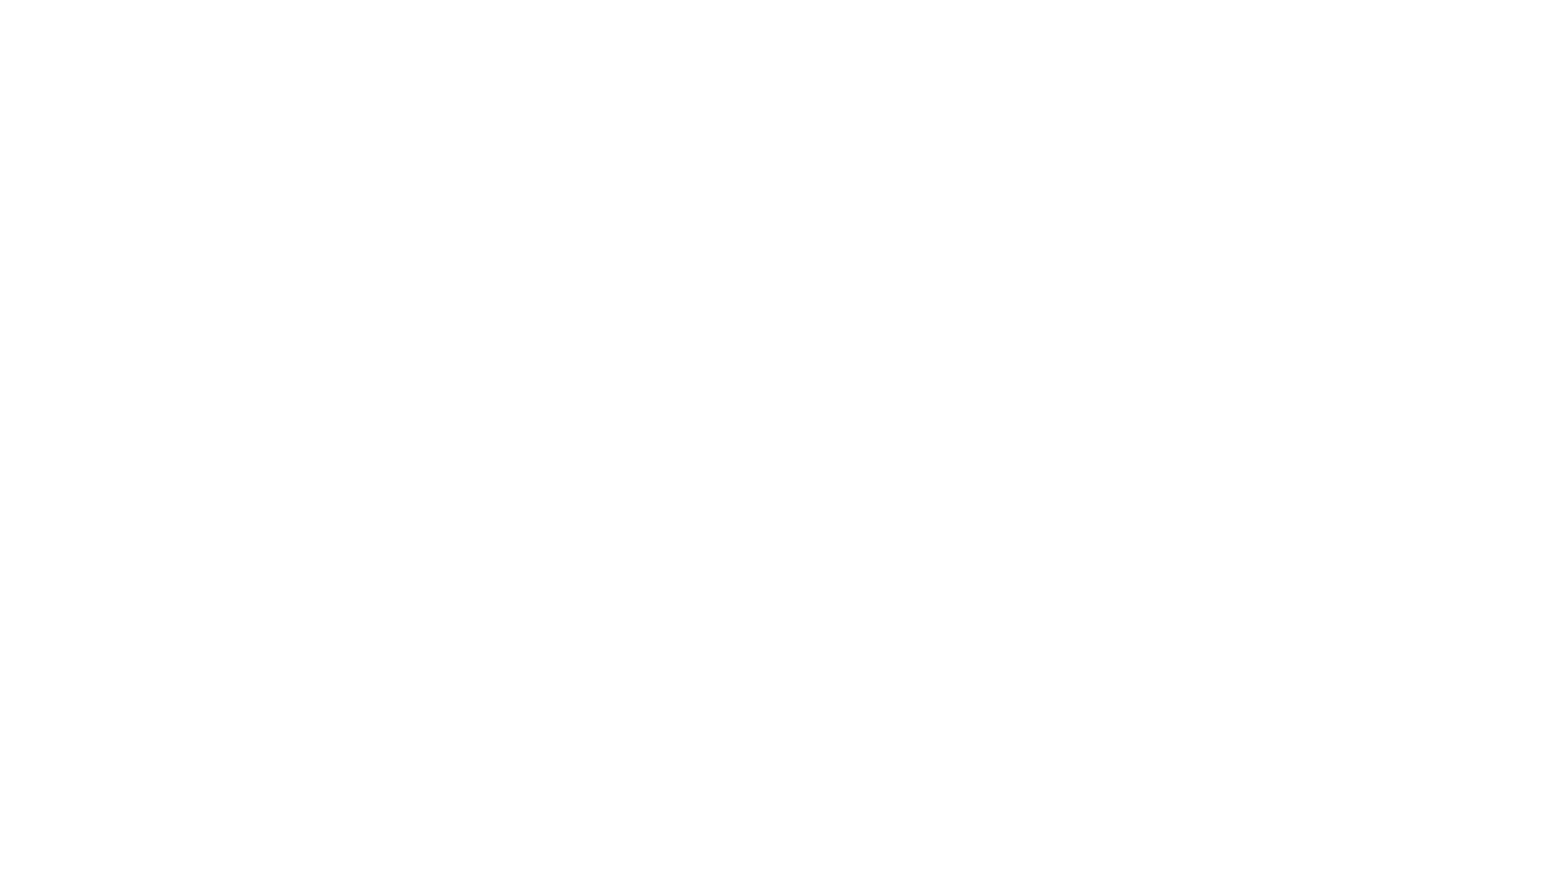 Радиотелескоп для наблюдений в области миллиметровых волн радиоастрономического отдела Крымской астрофизической обсерватории Академии наук СССР, установленный близ крымского поселка Симеиз рядом с горой Кошка, 1974 год